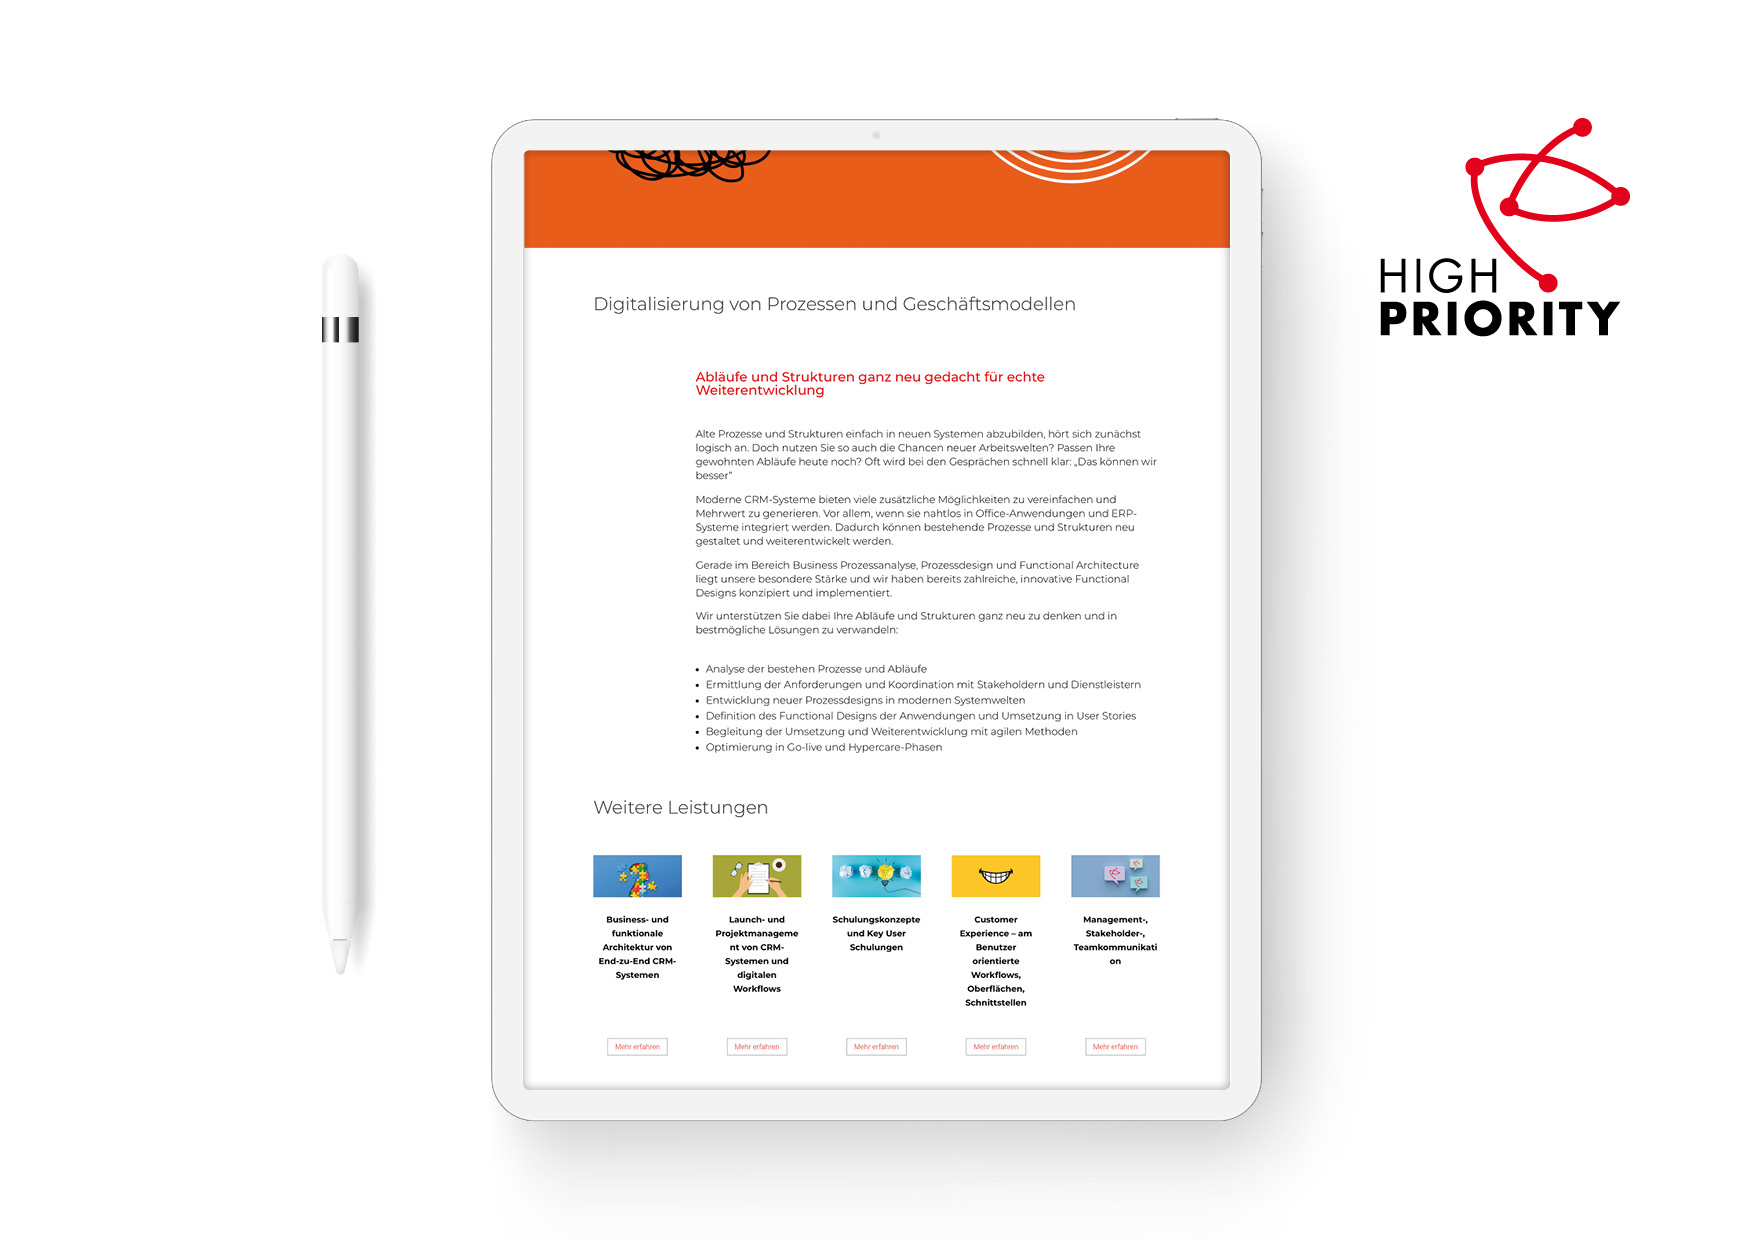 Webdesign und Programmierung der Homepage für das Beratungsunternehmen High Priority GmbH durch Webdesigner Ronald Wissler